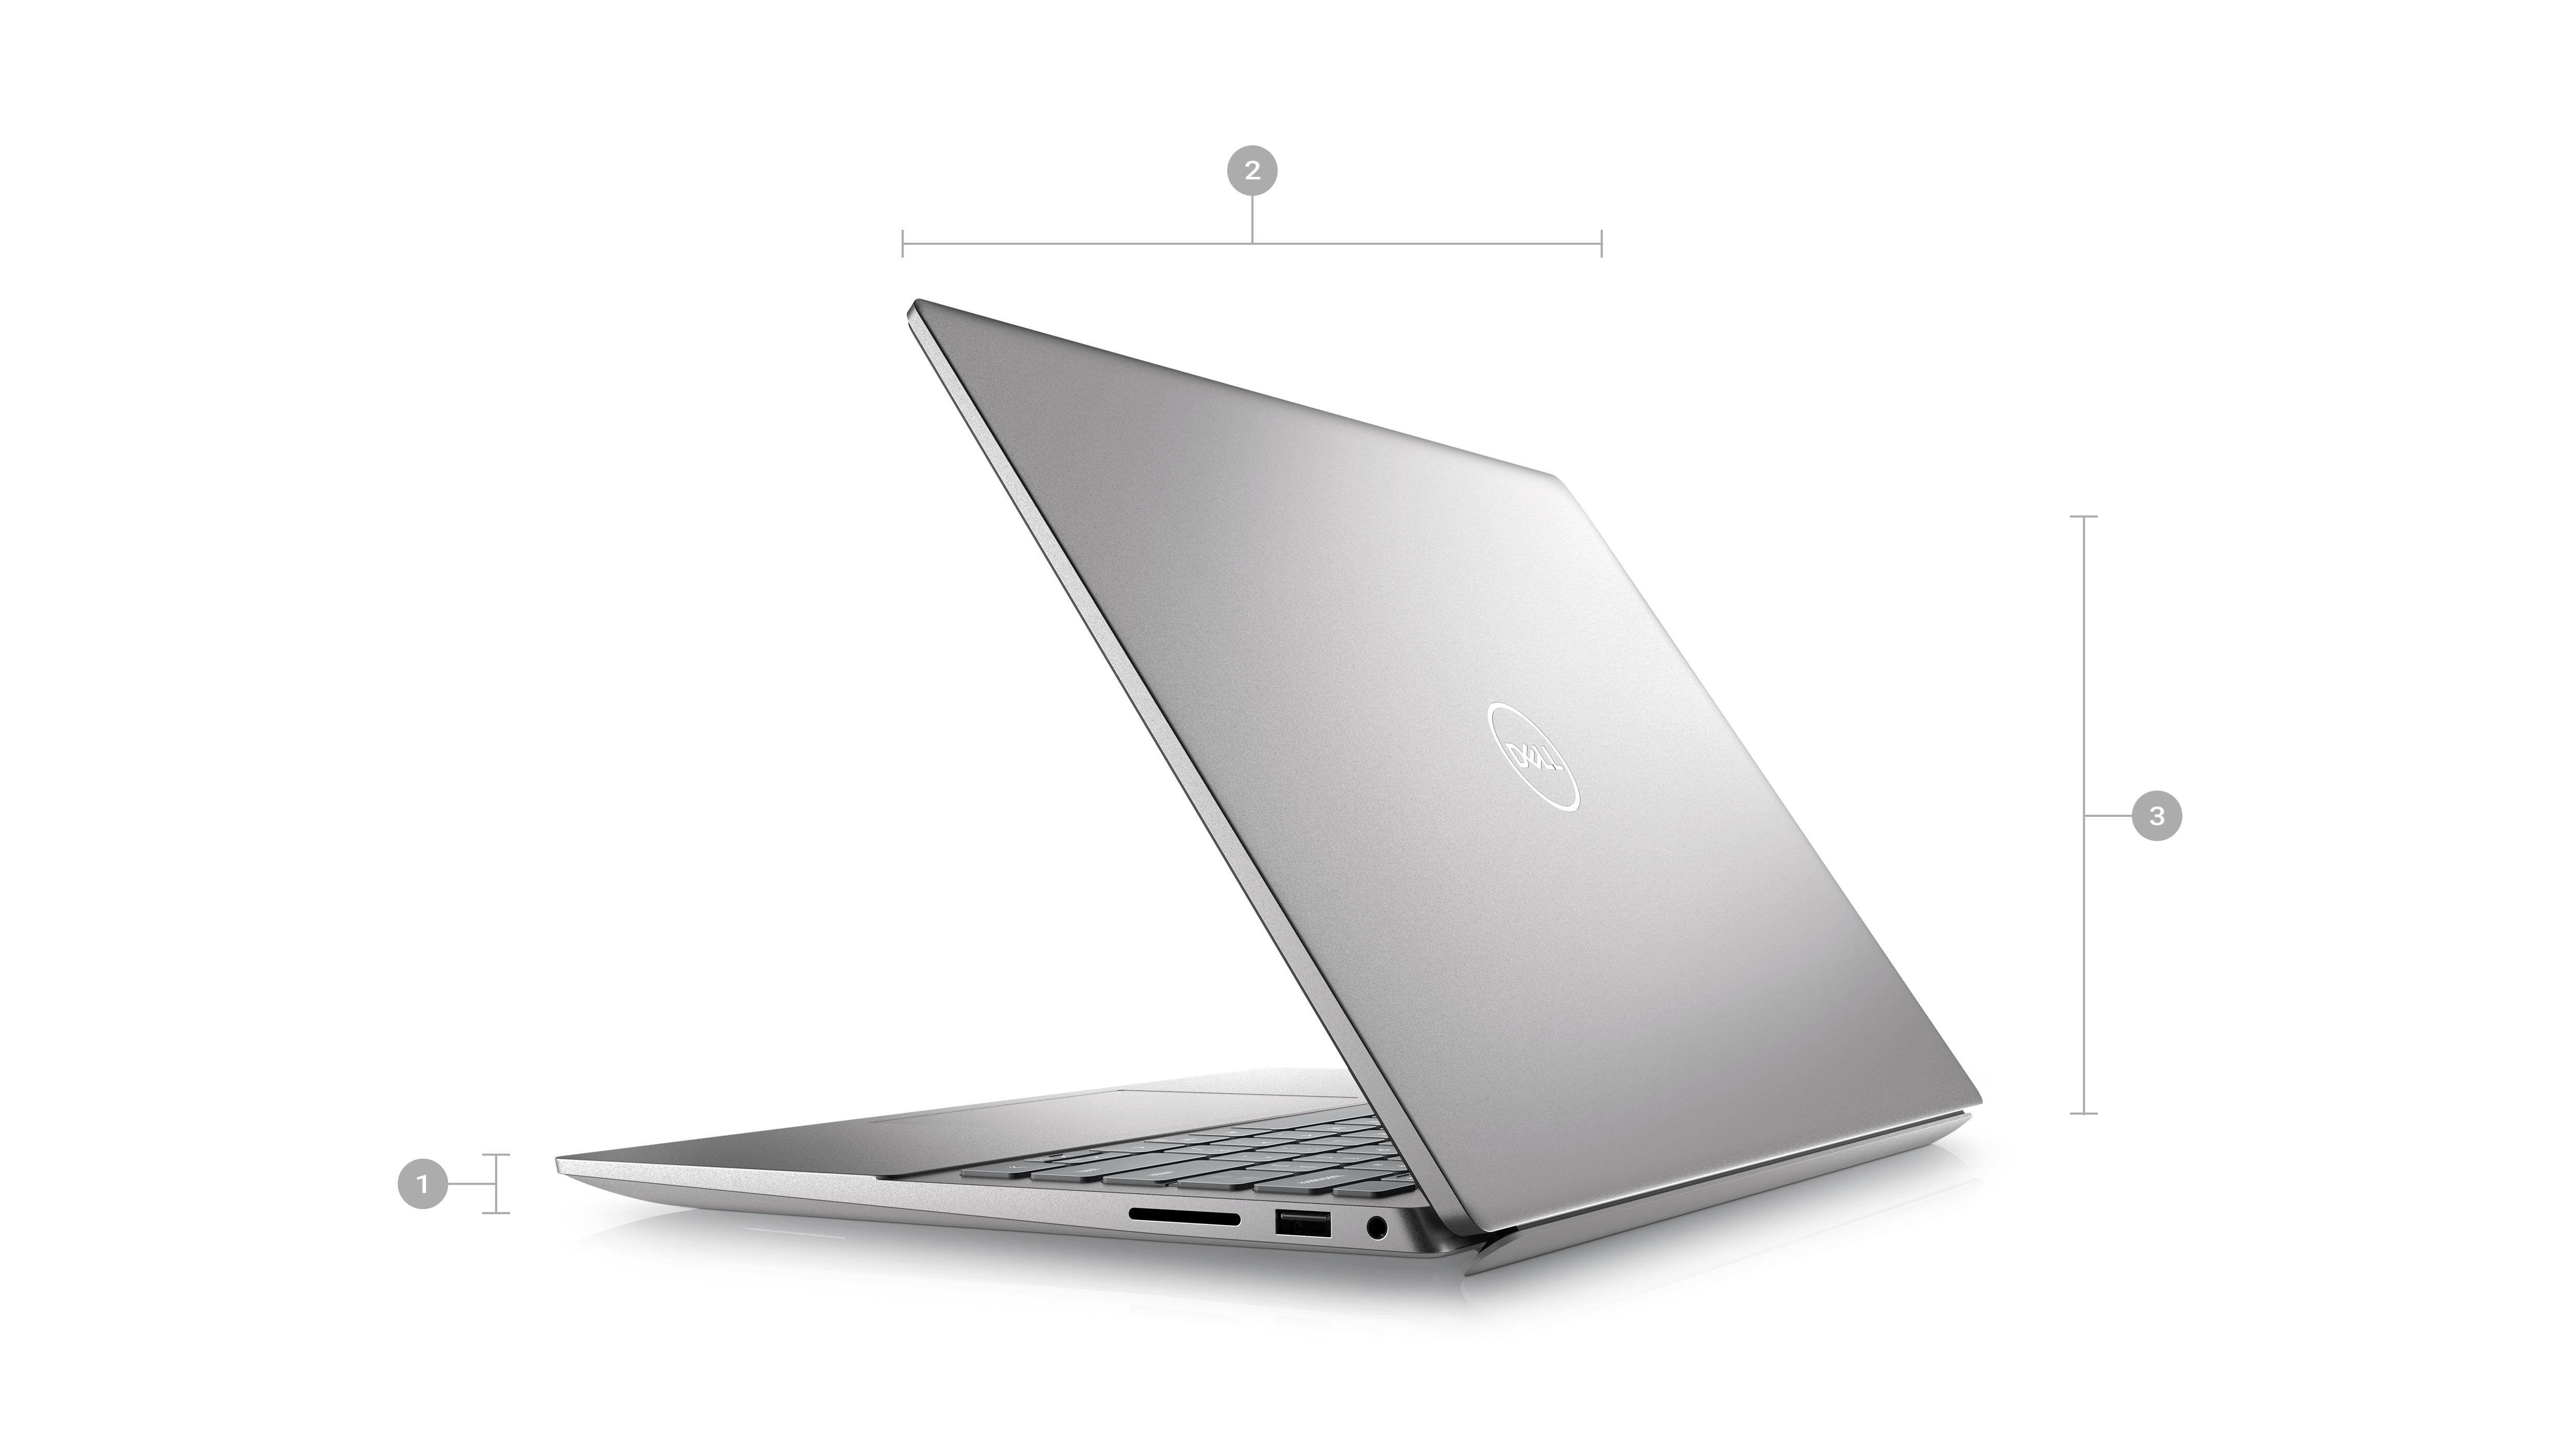 Bild eines Laptops vom Typ Inspiron 5420 mit sichtbarer Rückseite und Zahlen von 1 bis 3 für Produktabmessungen und -gewicht.